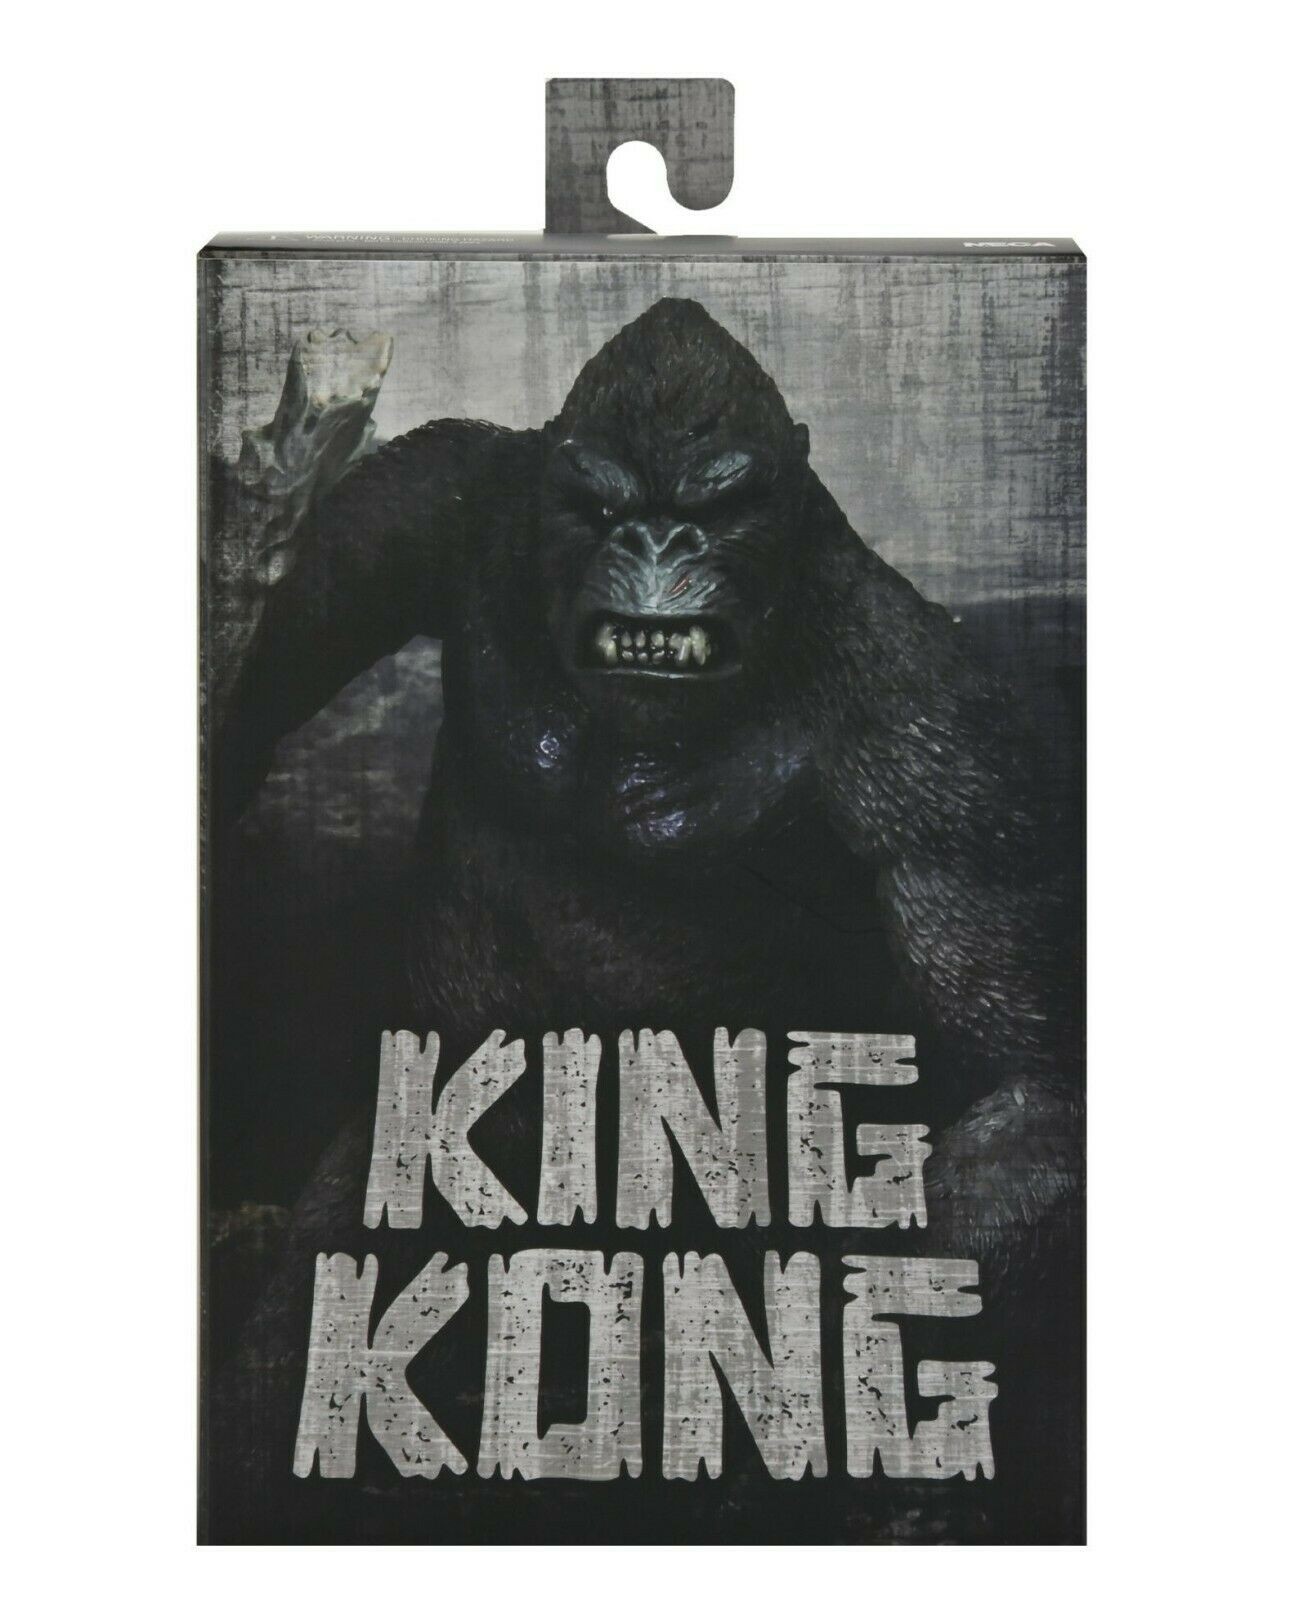 Kong Skull Island Ultimate King Kong 20 cm - 1 -